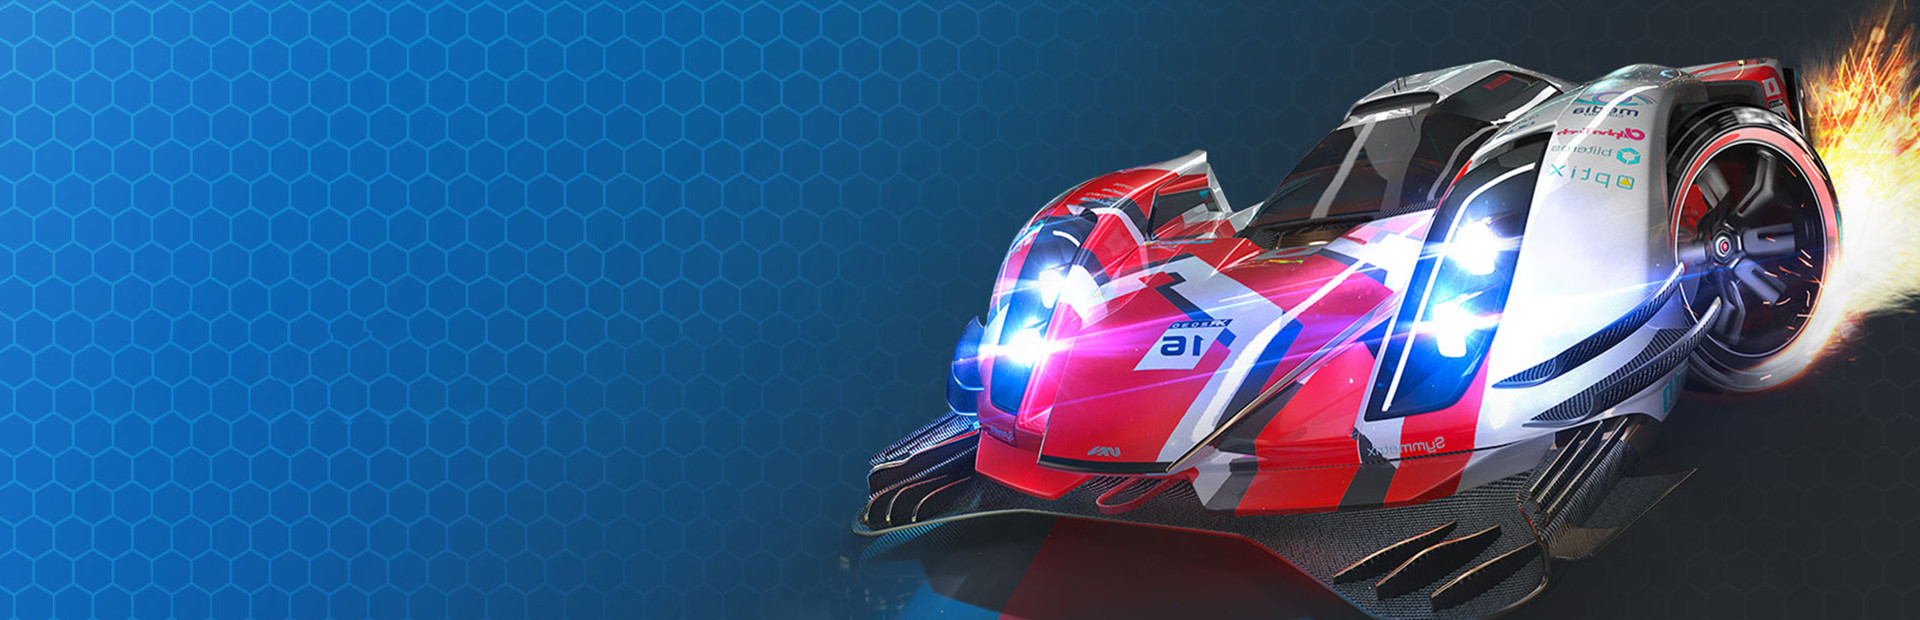 Xenon Racer cover image